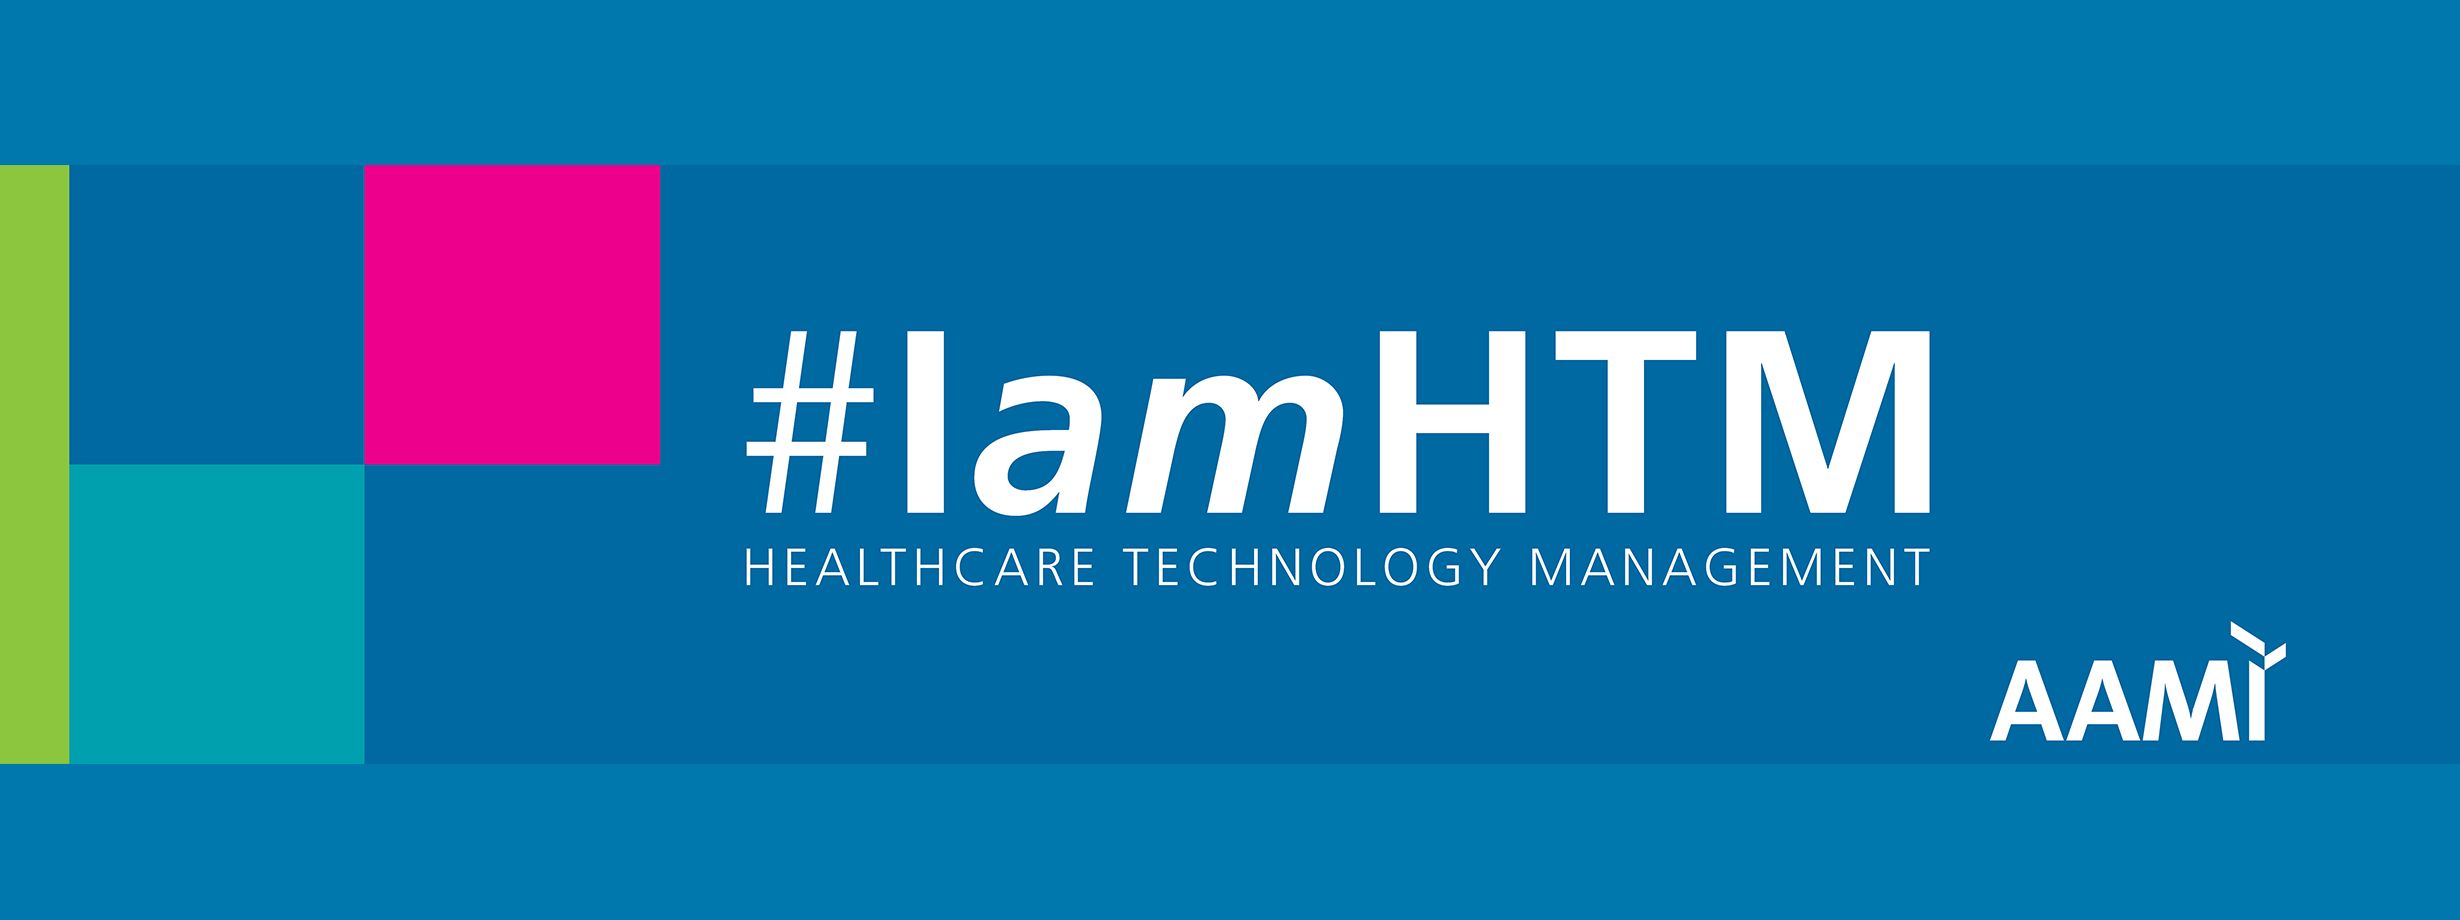 IamHTM Social Media Banner